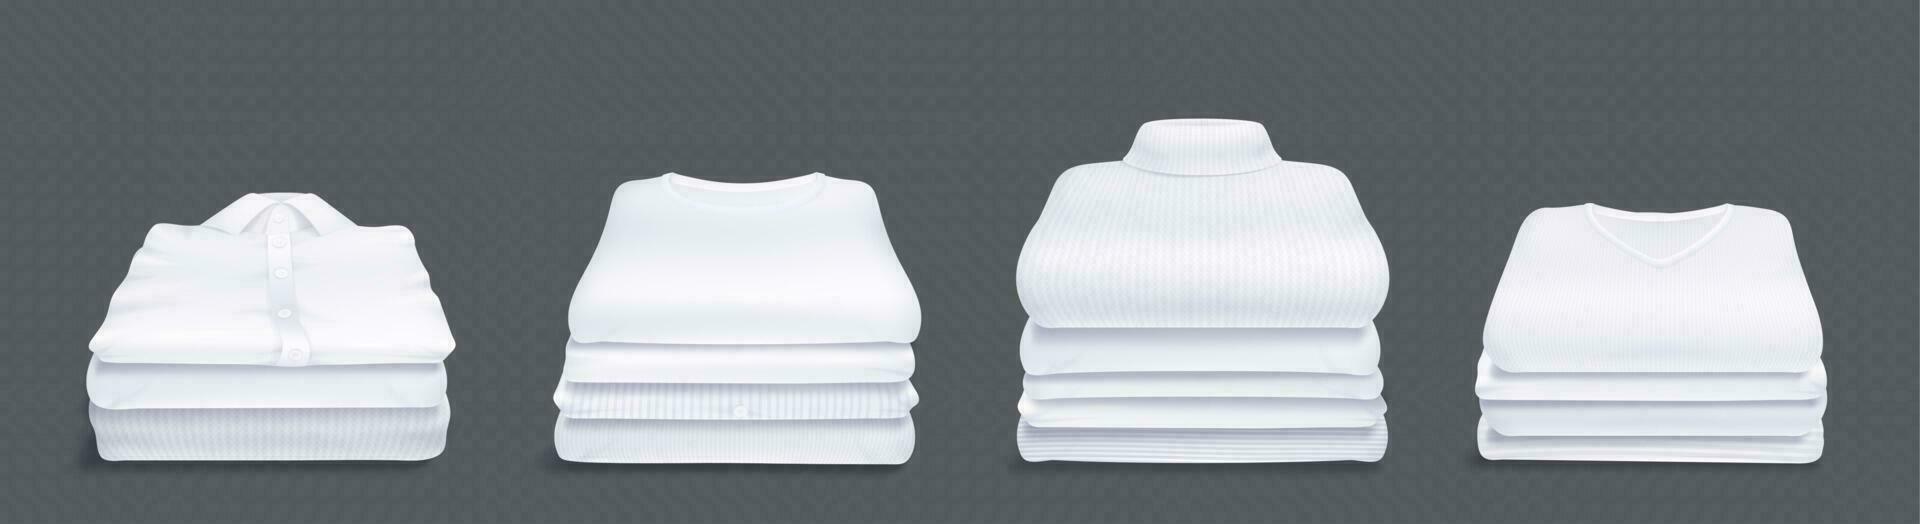 realistisk uppsättning av vit kläder stack vektor